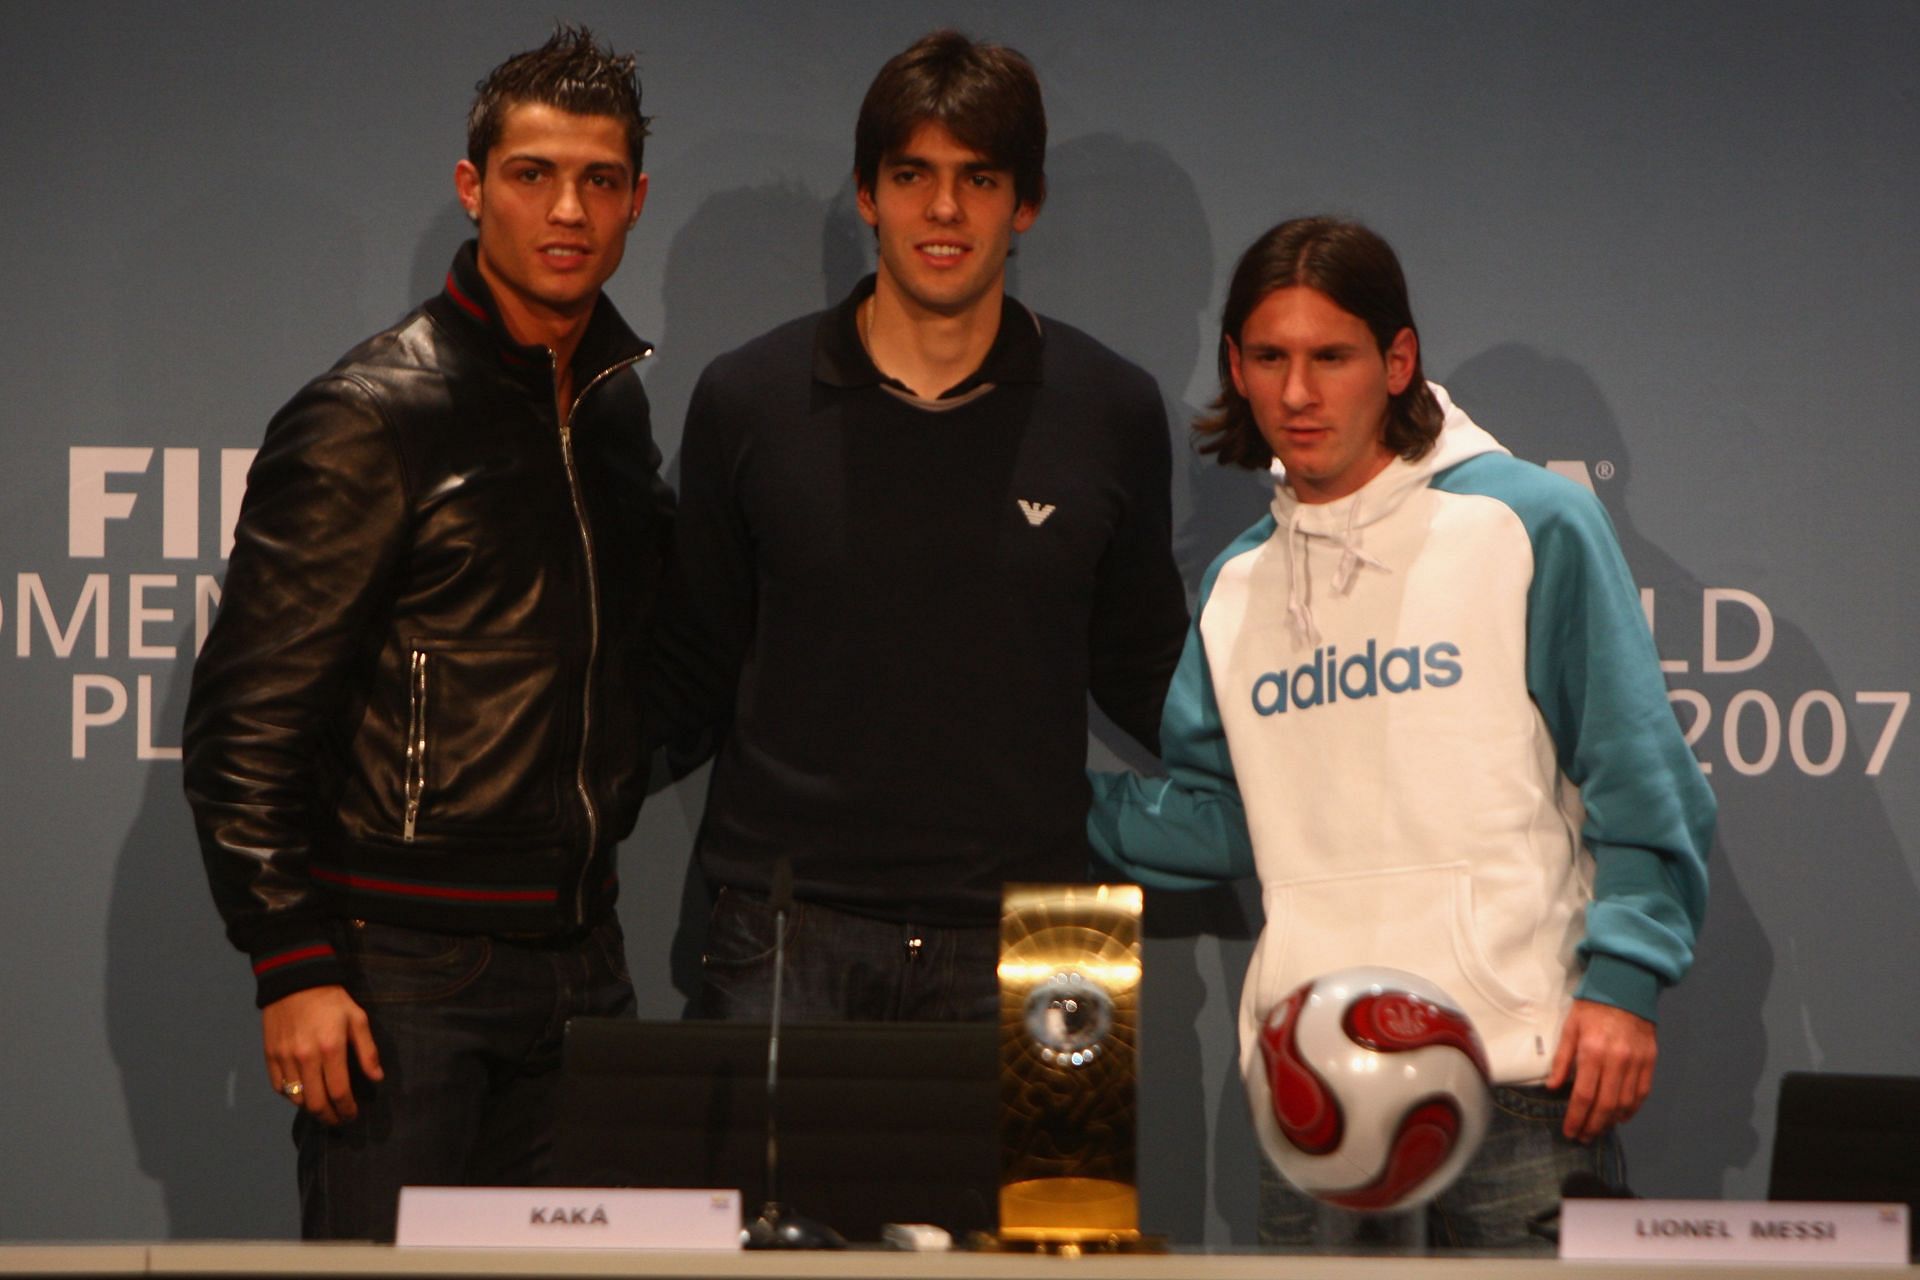 Cristiano Ronaldo, Kaka, and Lionel Messi